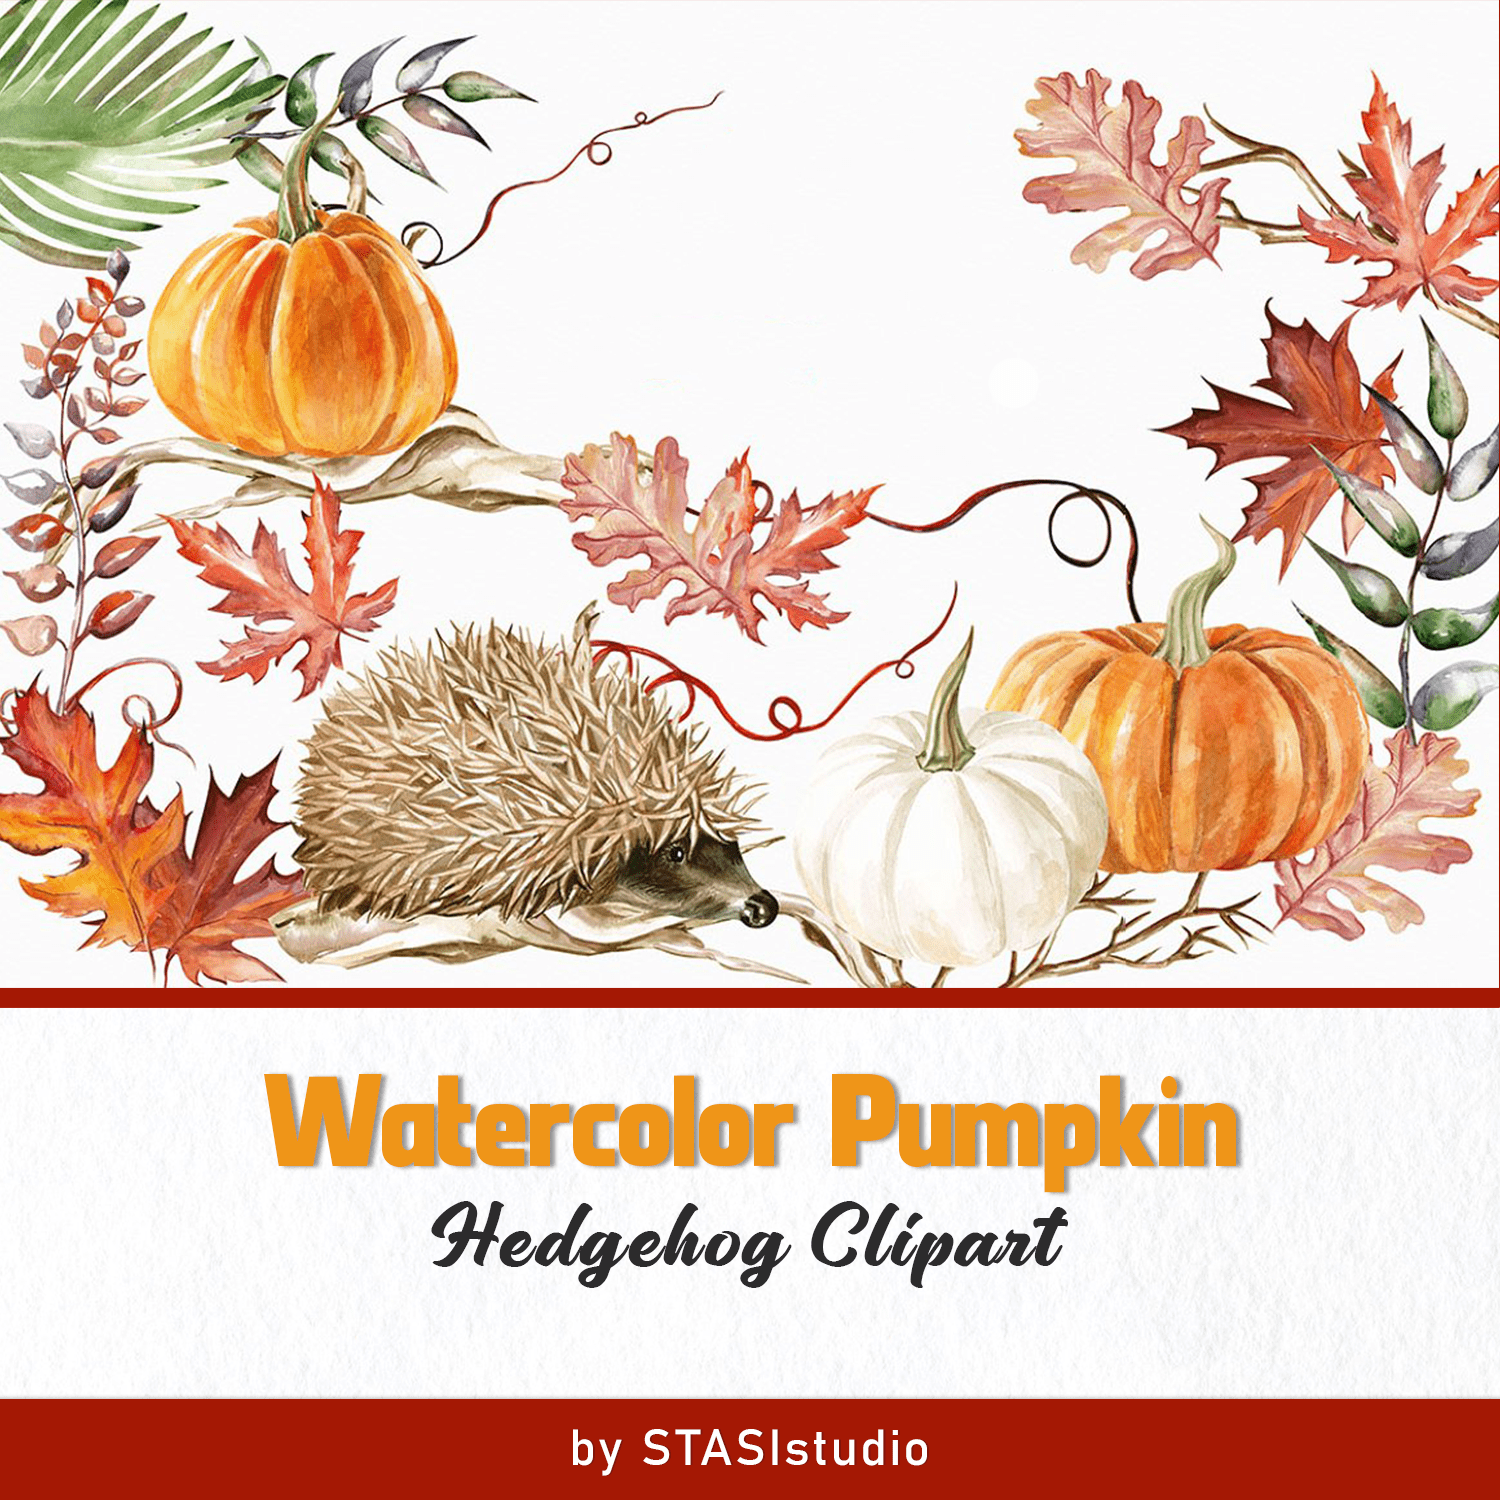 Watercolor Pumpkin Hedgehog Clipart cover.